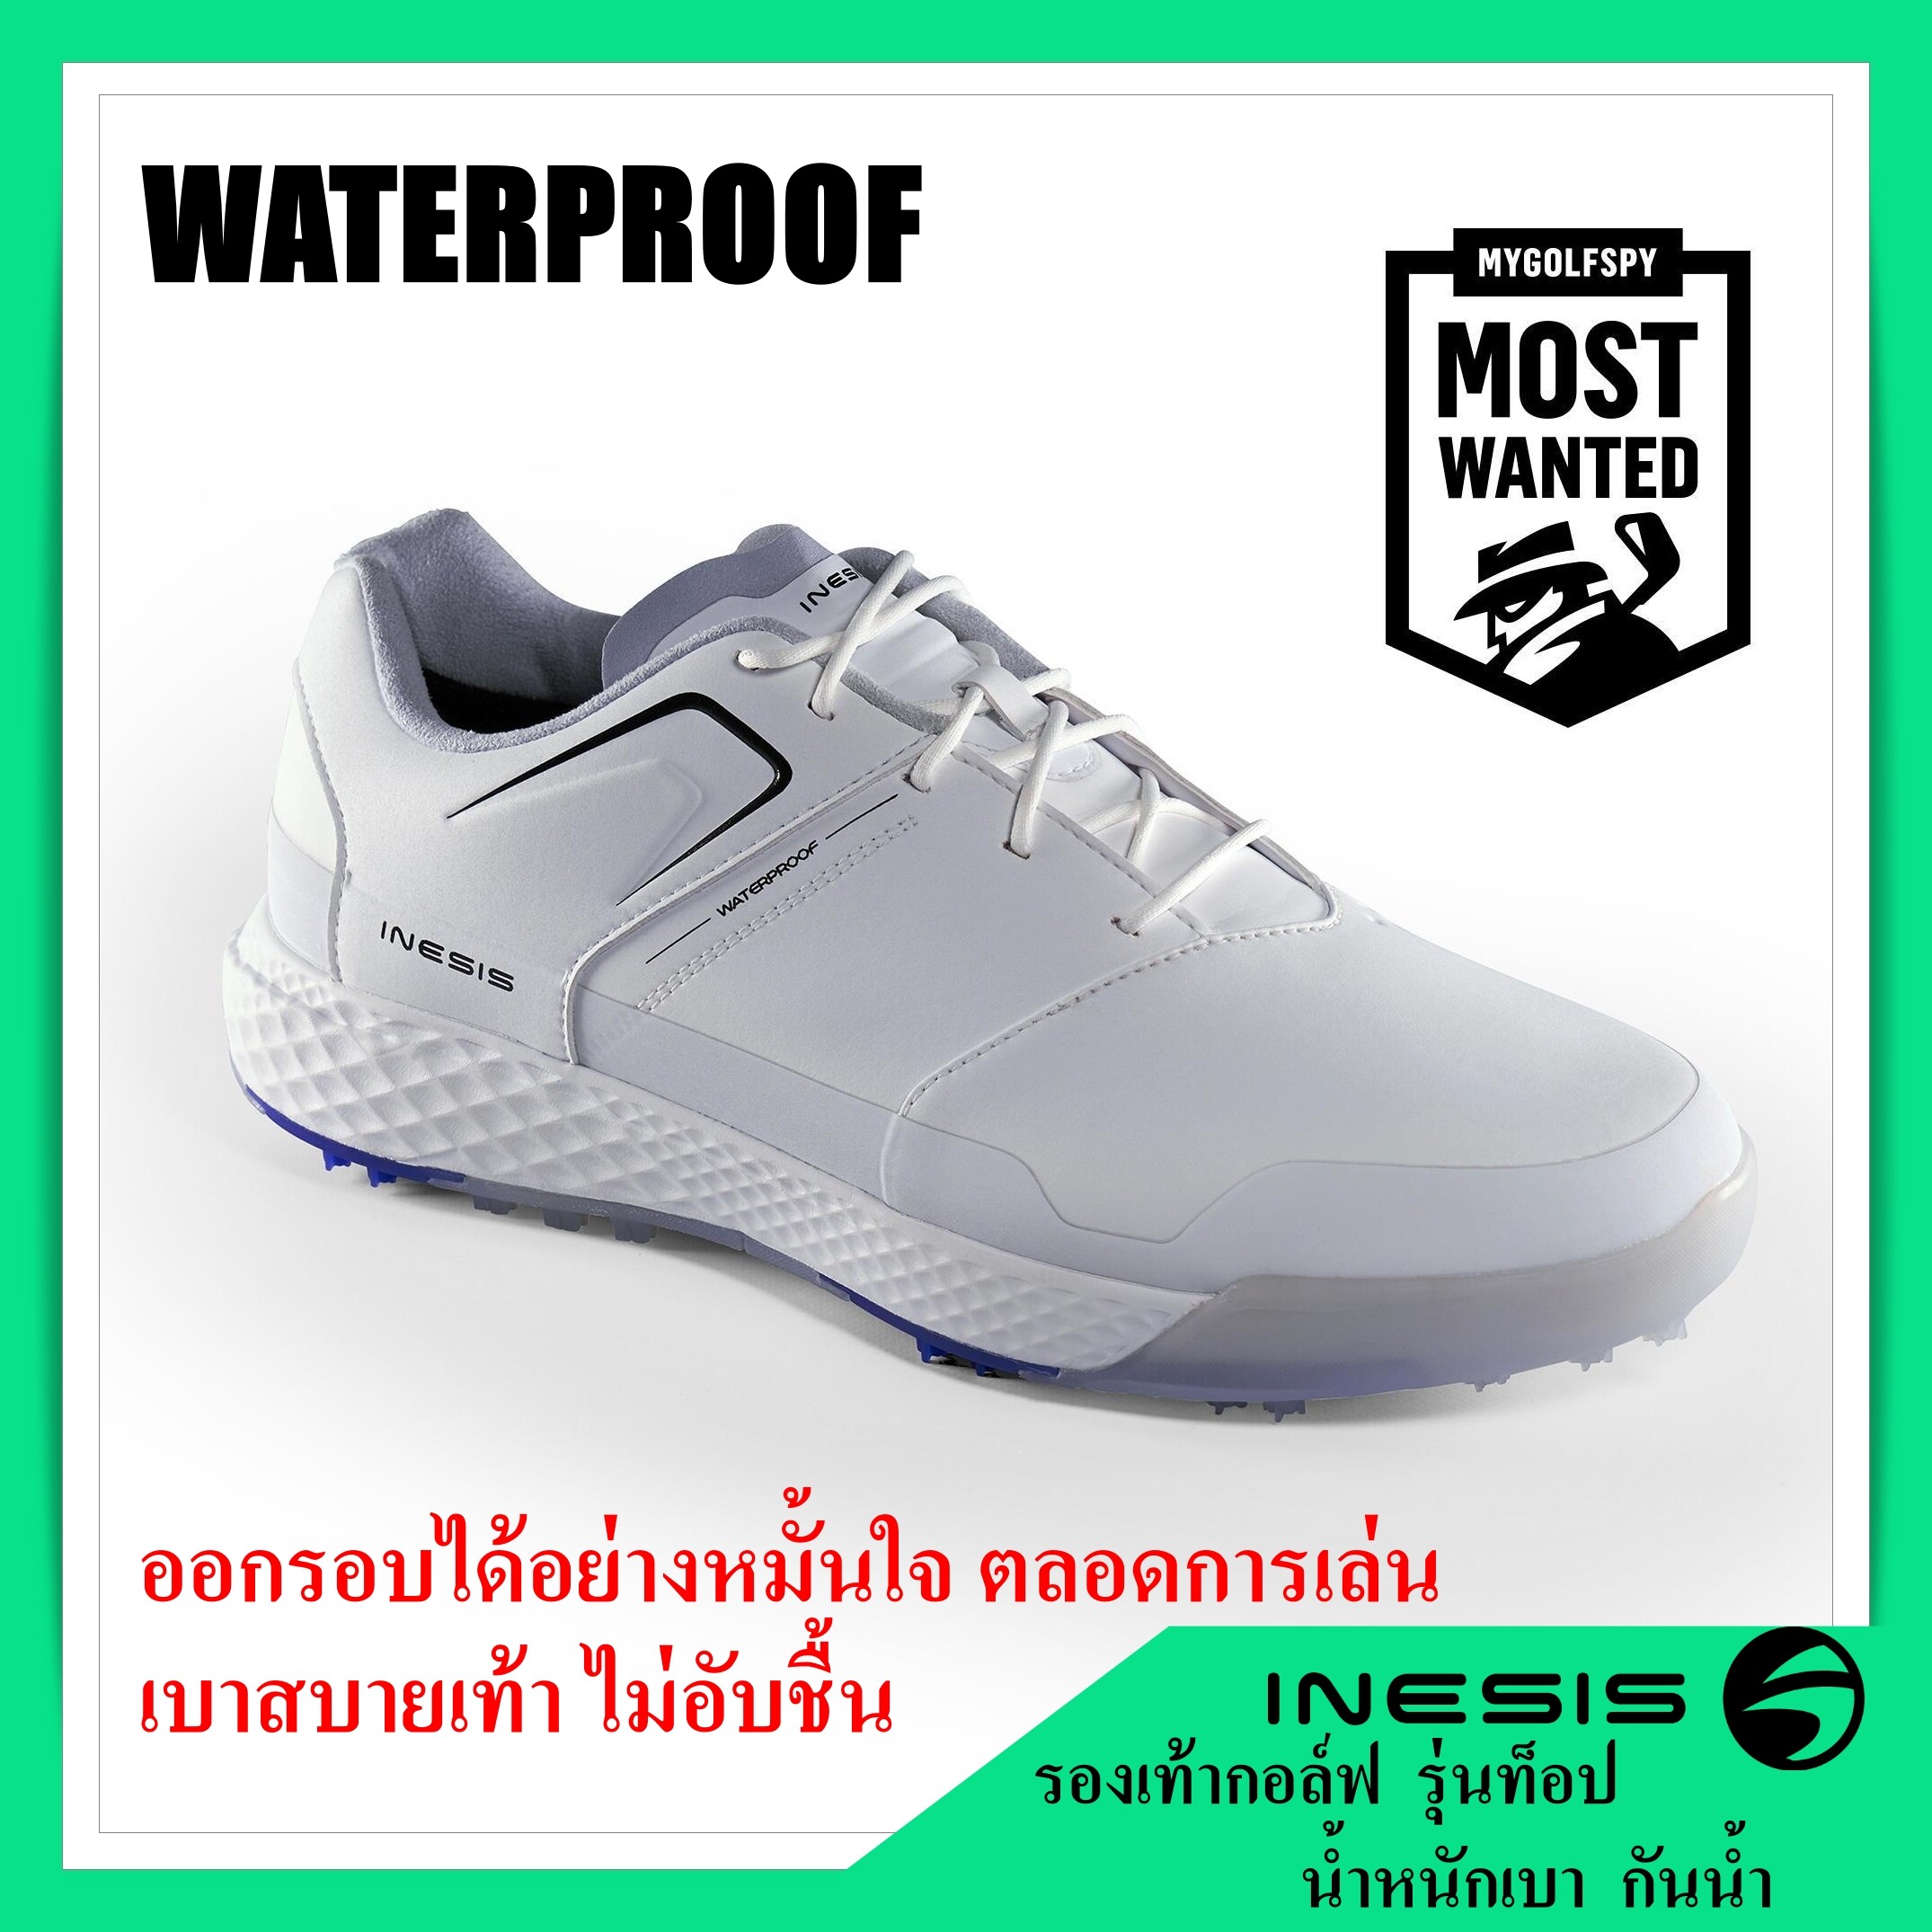 รองเท้ากอล์ฟ  INESIS WATERPROOF ใหม่ล่าสุดปี 2019 ตัวท็อป เบาที่สุดในโลก 370 กรัม แบรนด์จากฝรั่งเศส (สำหรับผู้ชาย)